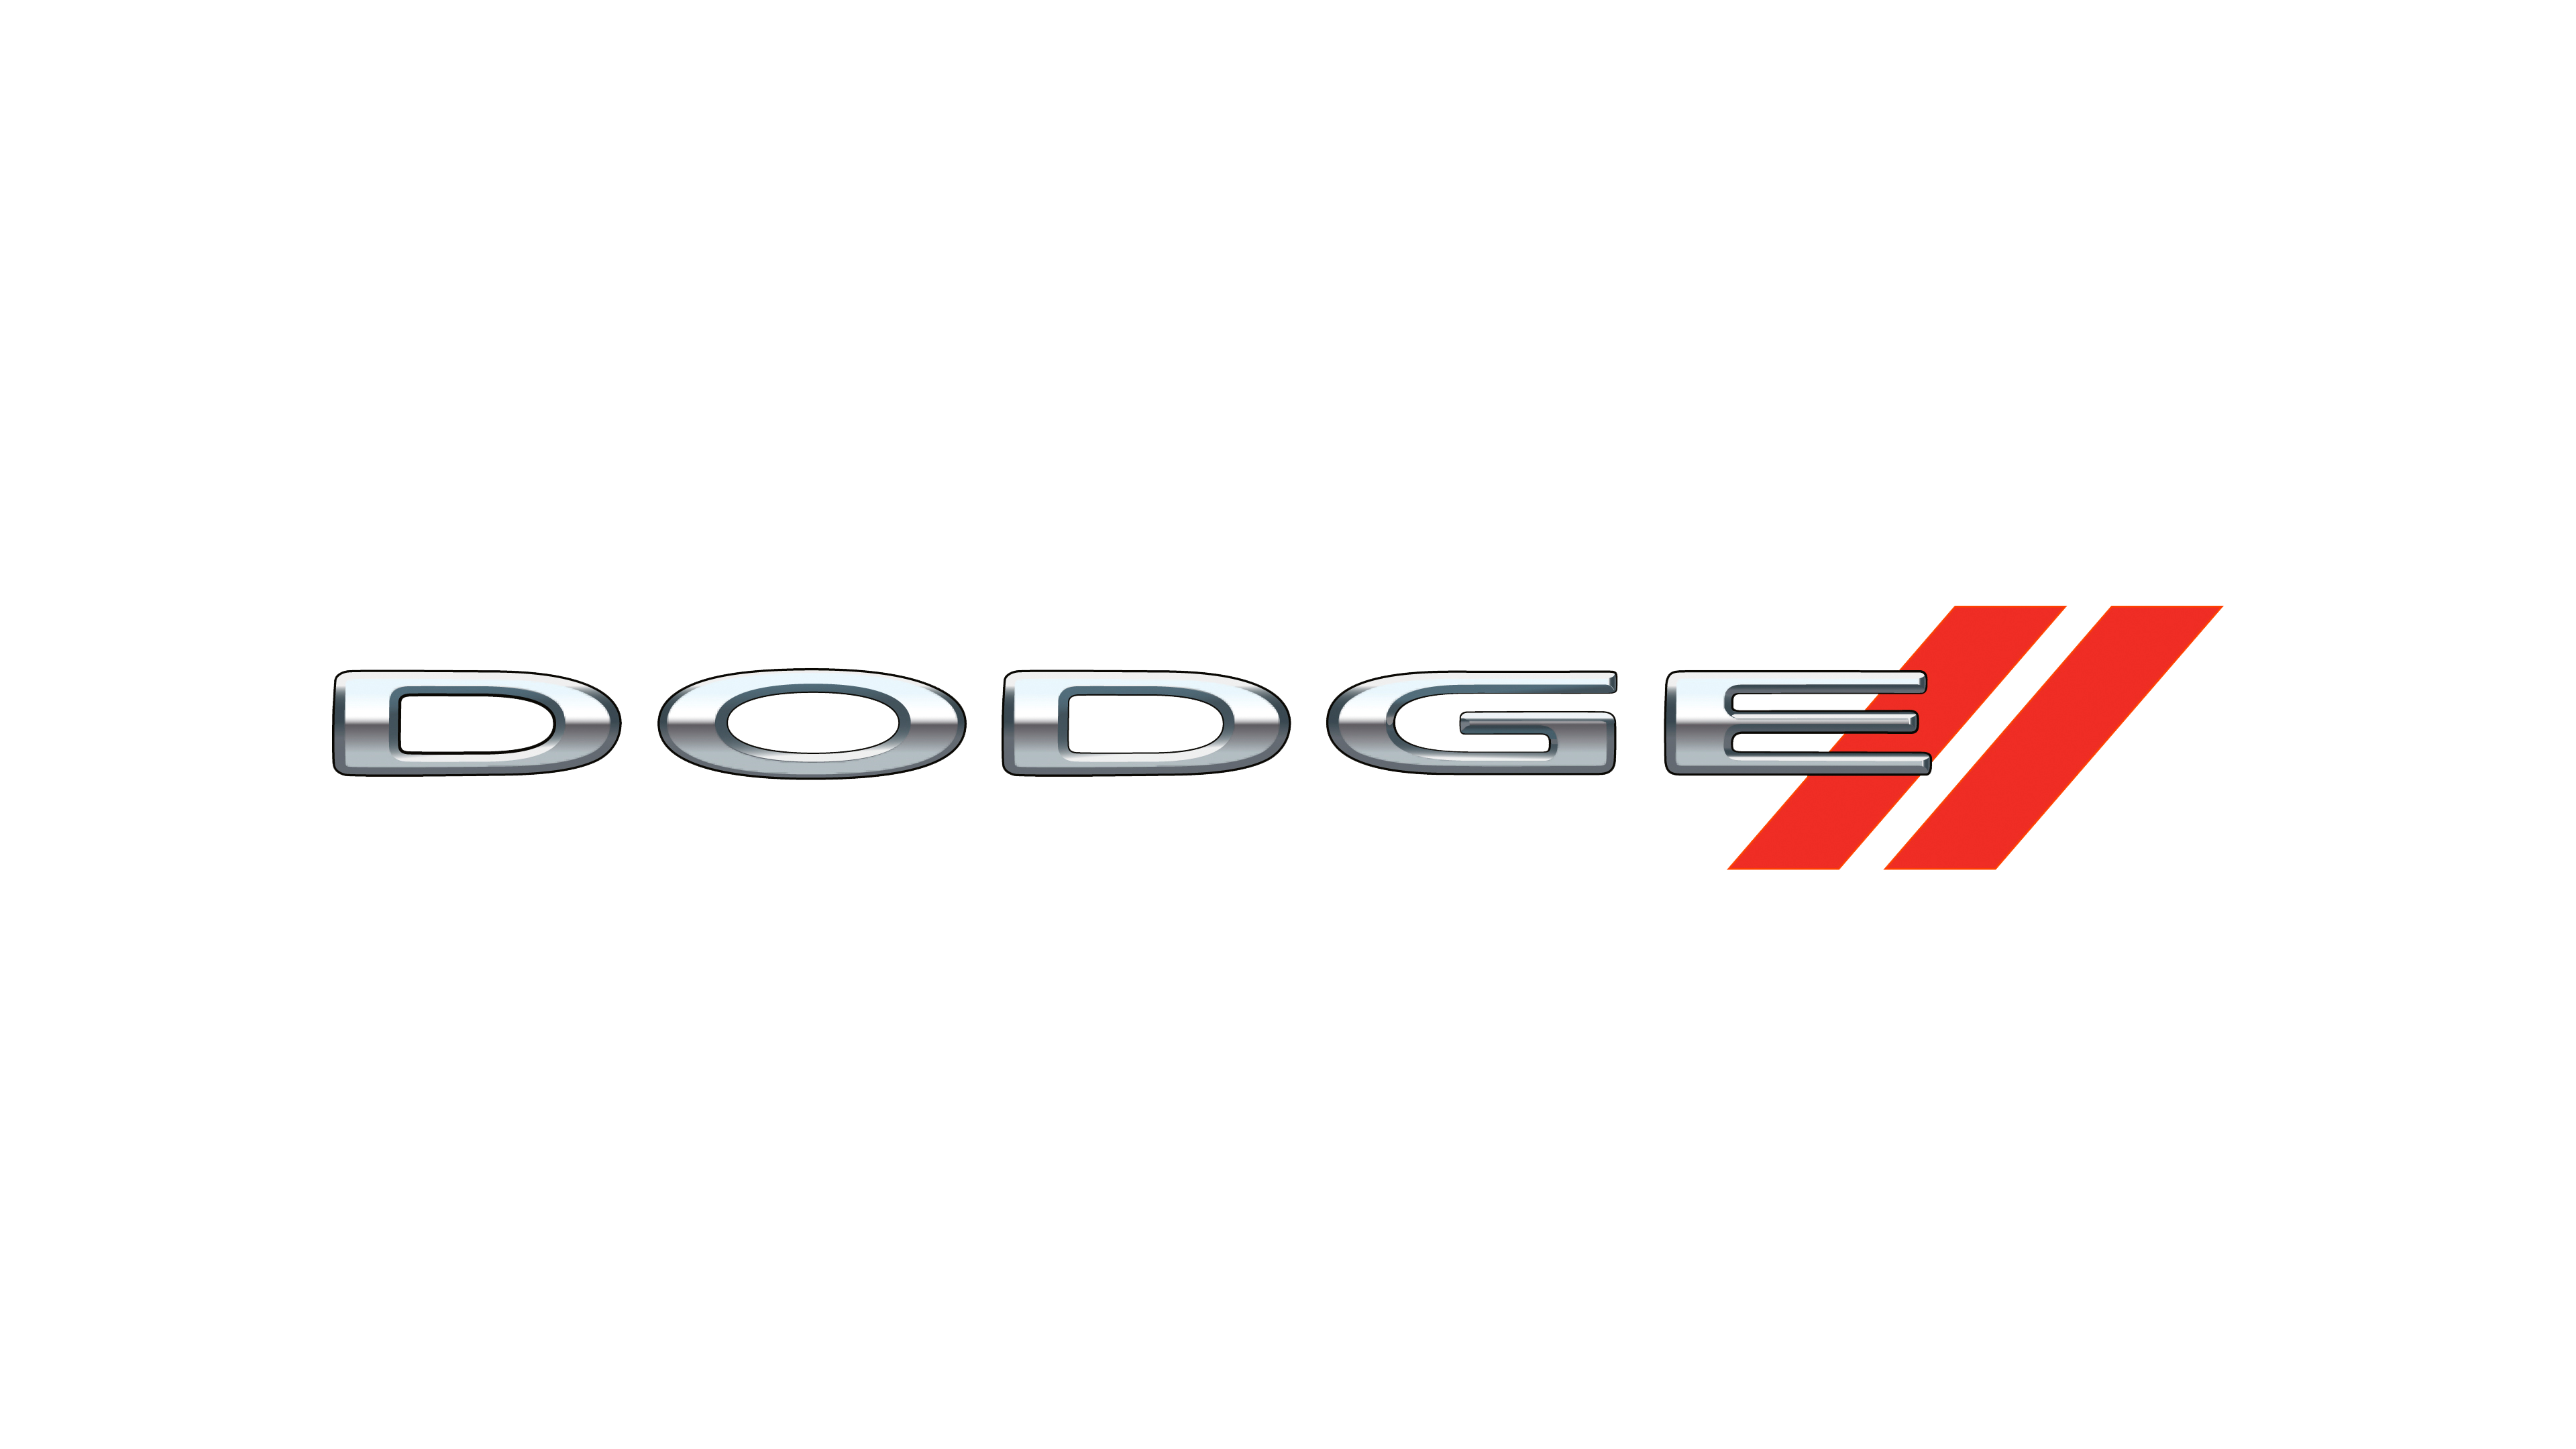 Dodge Super Bee Dodge Ram Rum